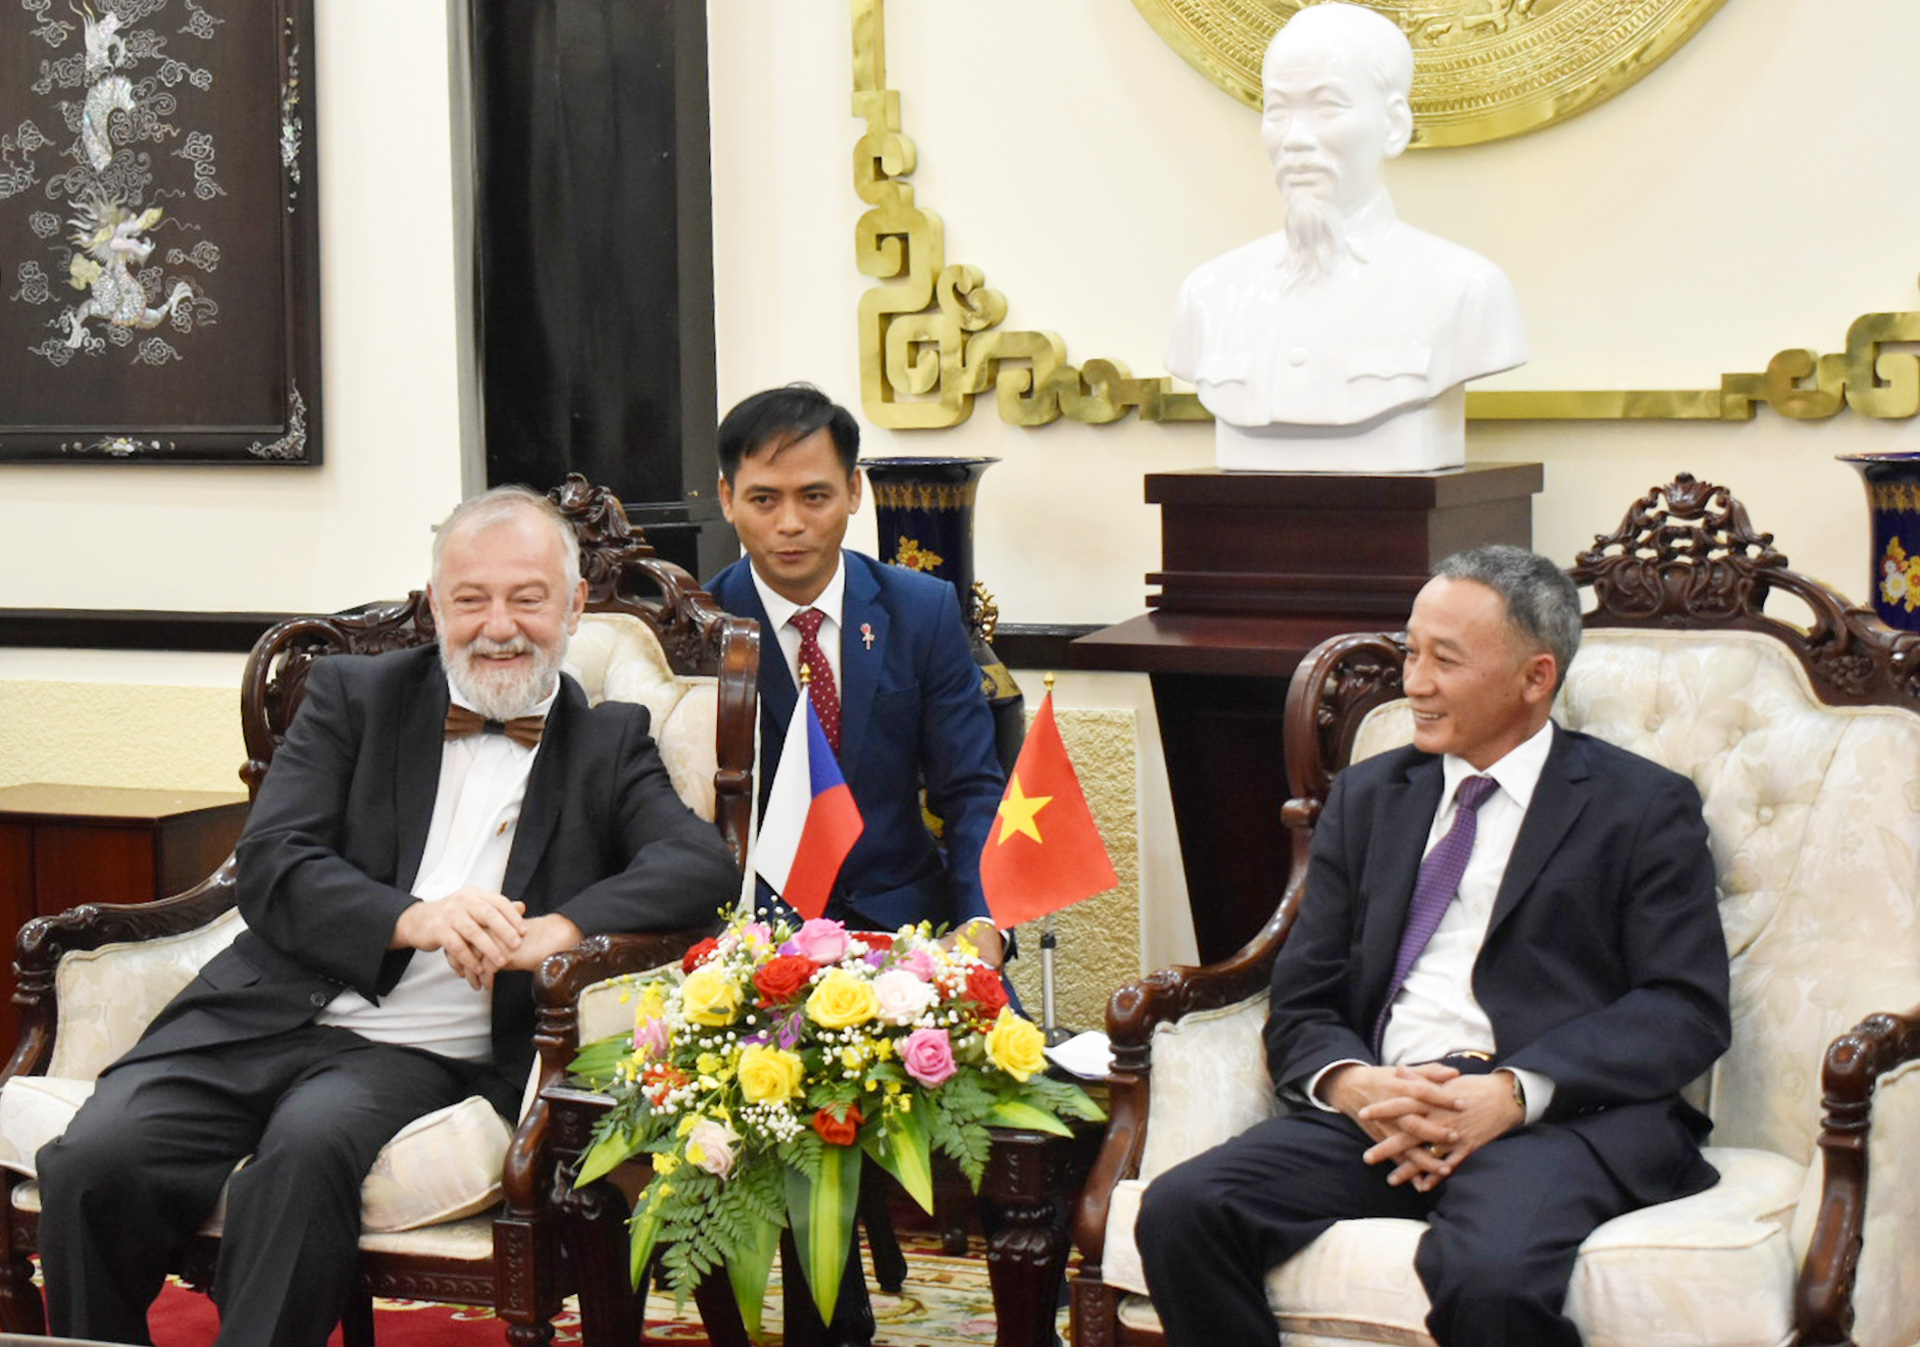 Chủ tịch UBND tỉnh Lâm Đồng Trần Văn Hiệp tiếp Đại sứ Cộng hòa Séc Hynek Kmonicek